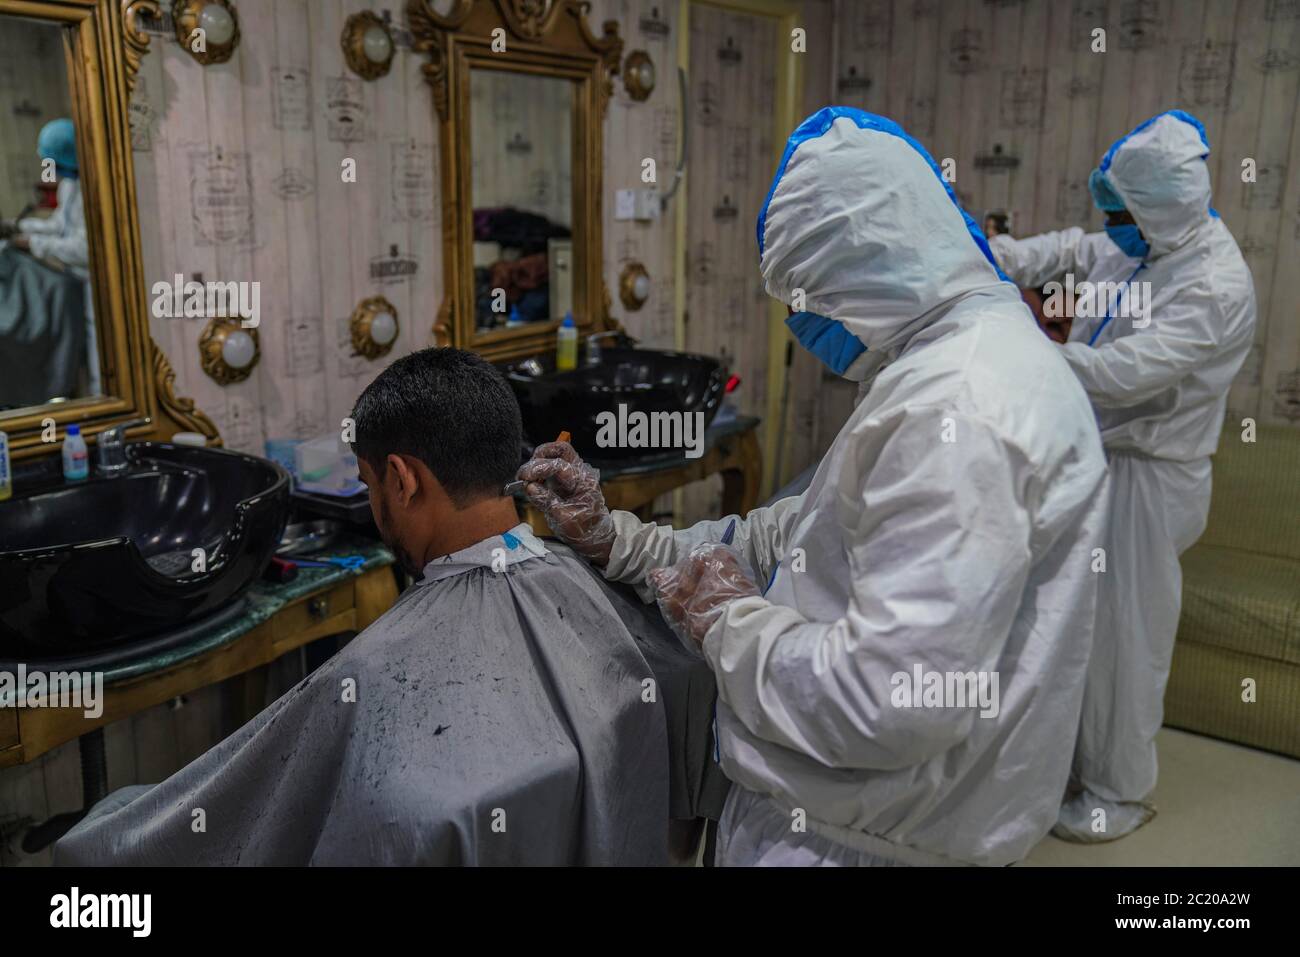 Dhaka, Dhaka, Bangladesch. Juni 2020. Barbiere in Schutzanzügen und Gesichtsmasken bieten dem Kunden während der COVID-19-Coronavirus-Pandemie am 16. Juni 2020 in Dhaka, Bangladesch, einen Haarschnitt-Service in einem Salon. Kredit: Zabed Hasnain Chowdhury/ZUMA Wire/Alamy Live Nachrichten Stockfoto